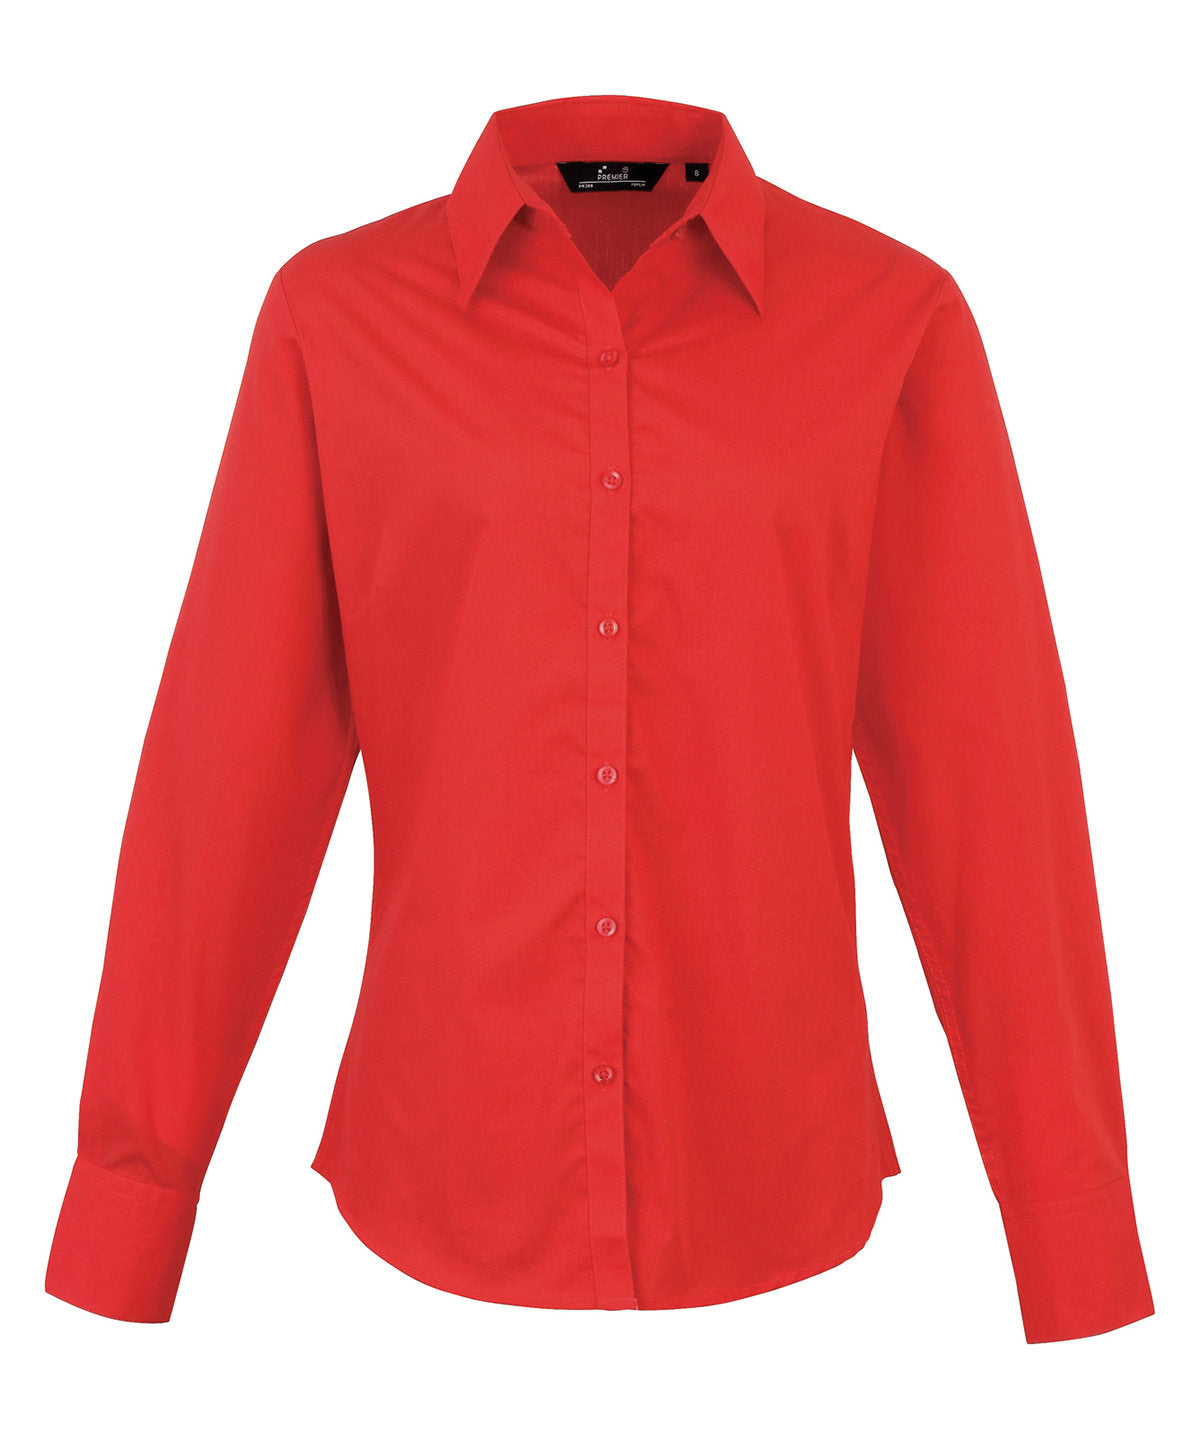 Premier Women's poplin long sleeve blouse Red